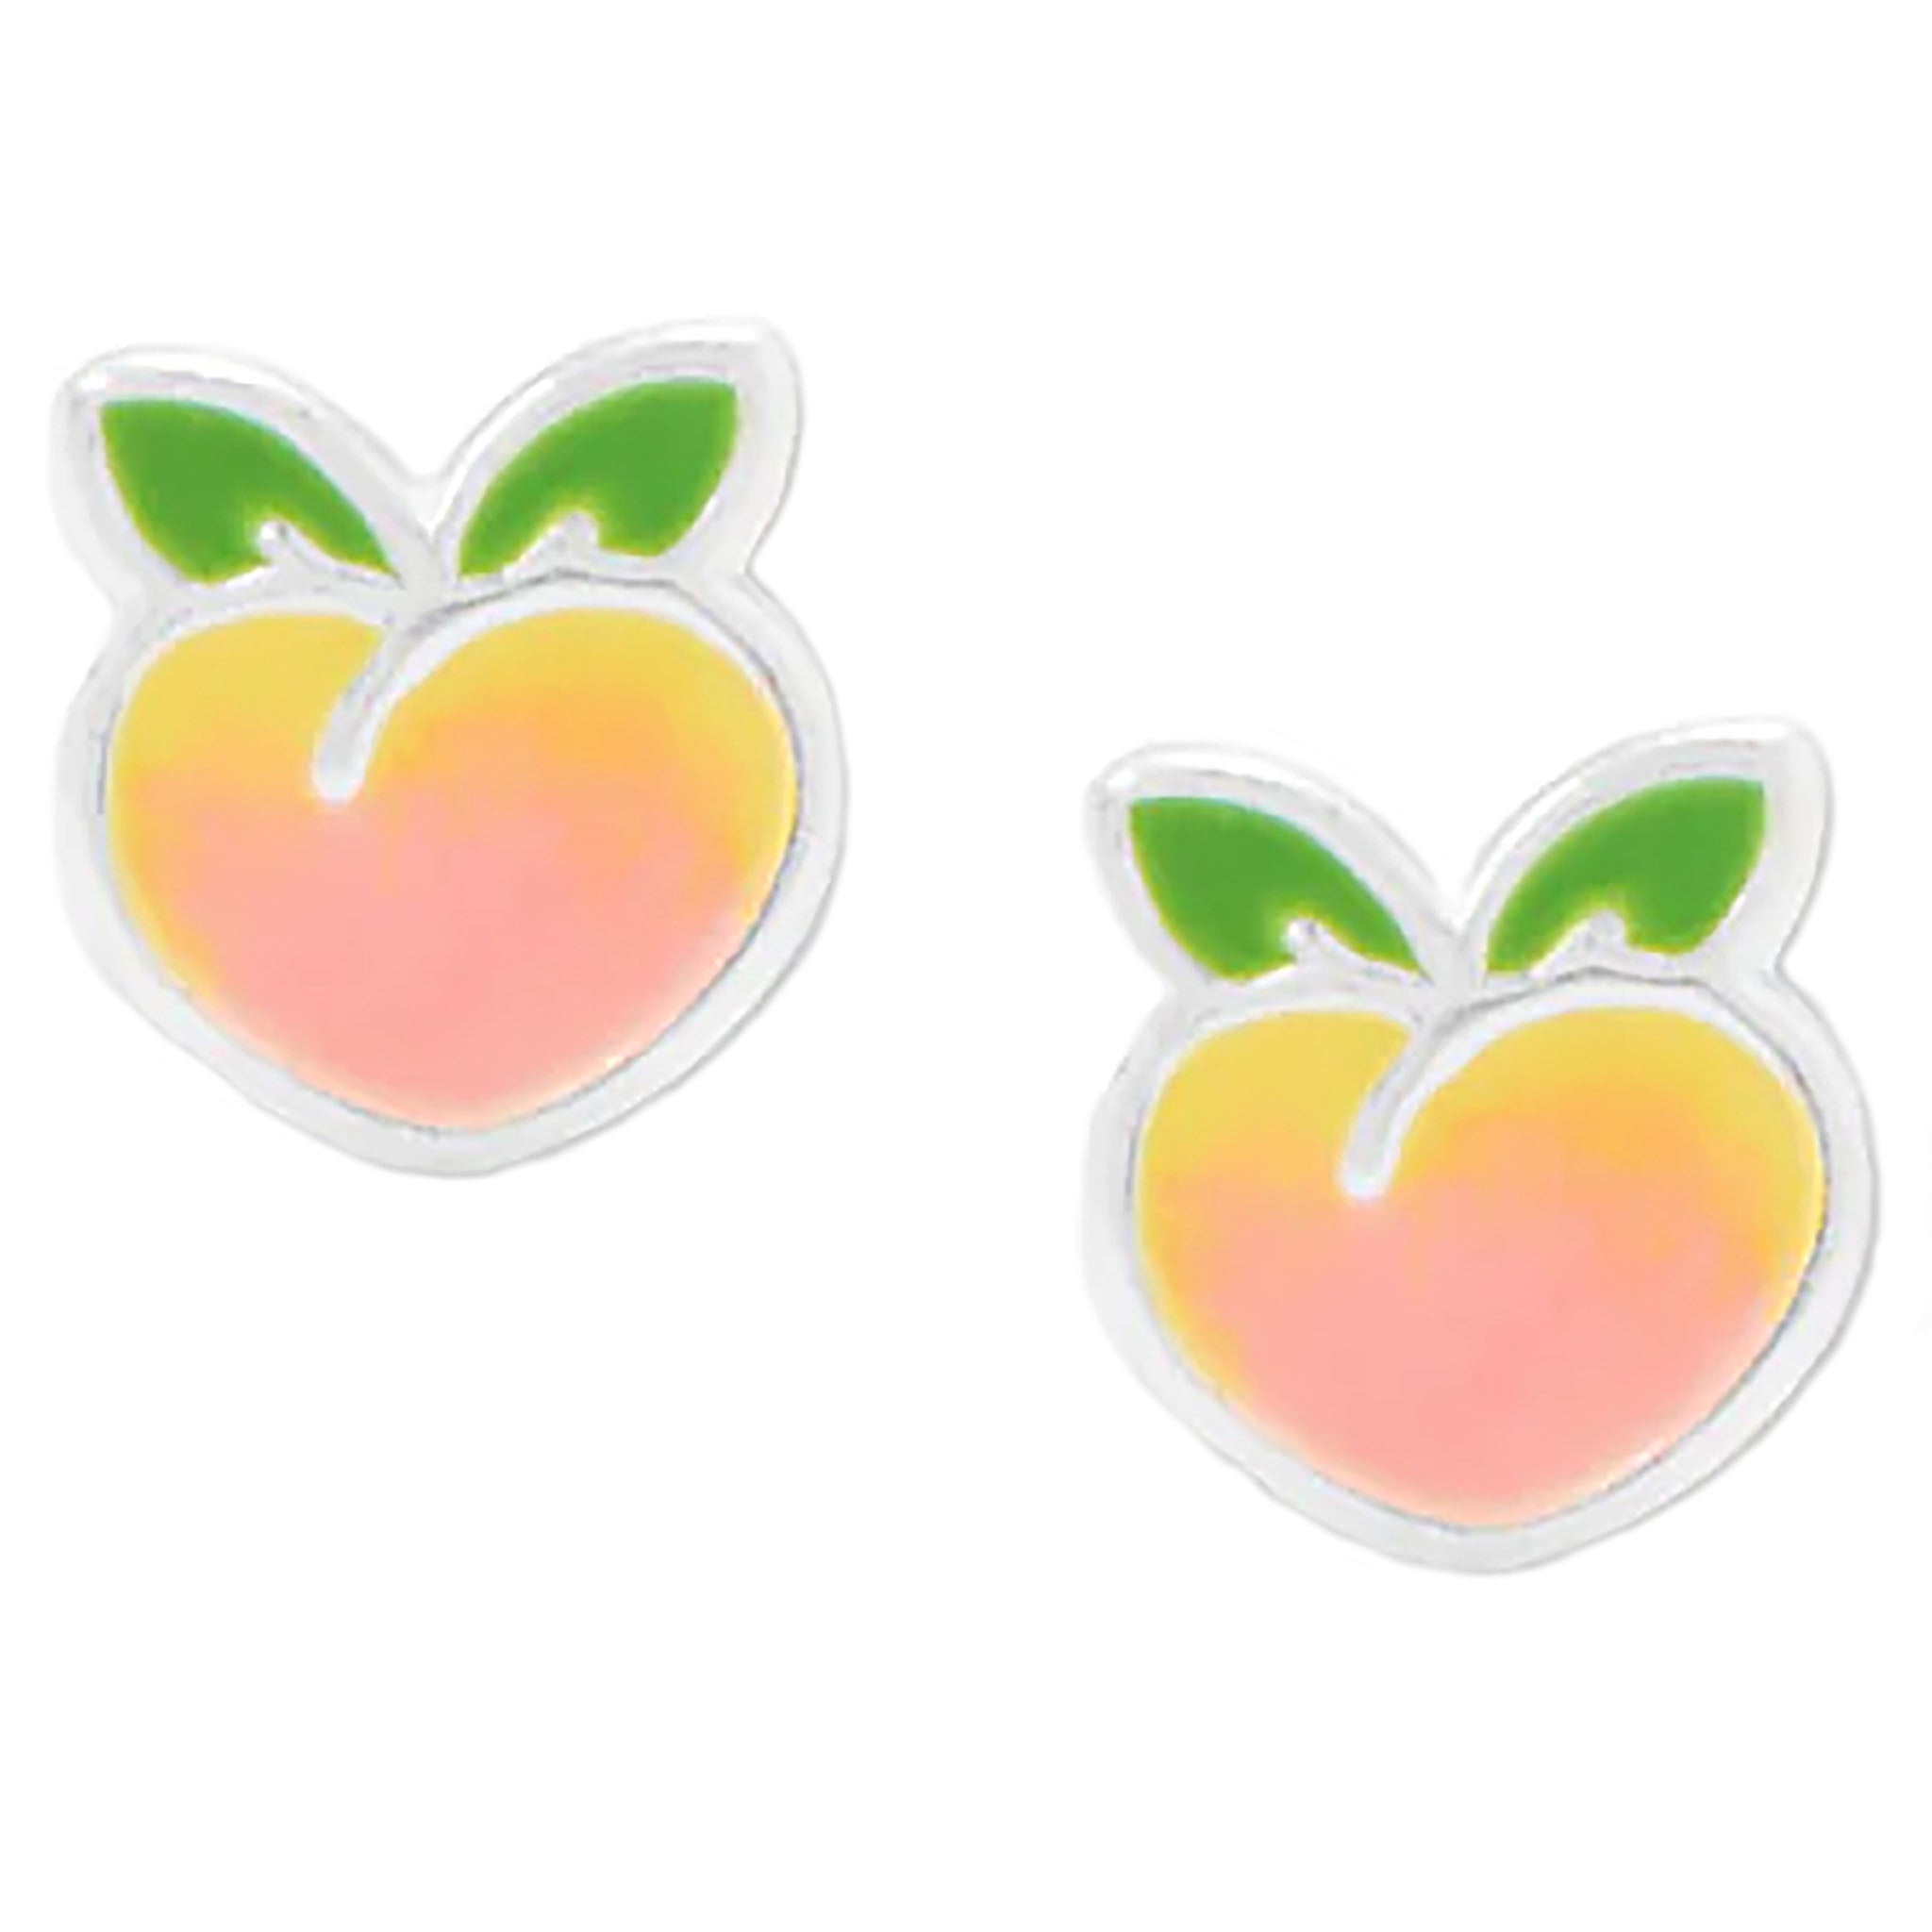 Enamel Peach Stud Earrings